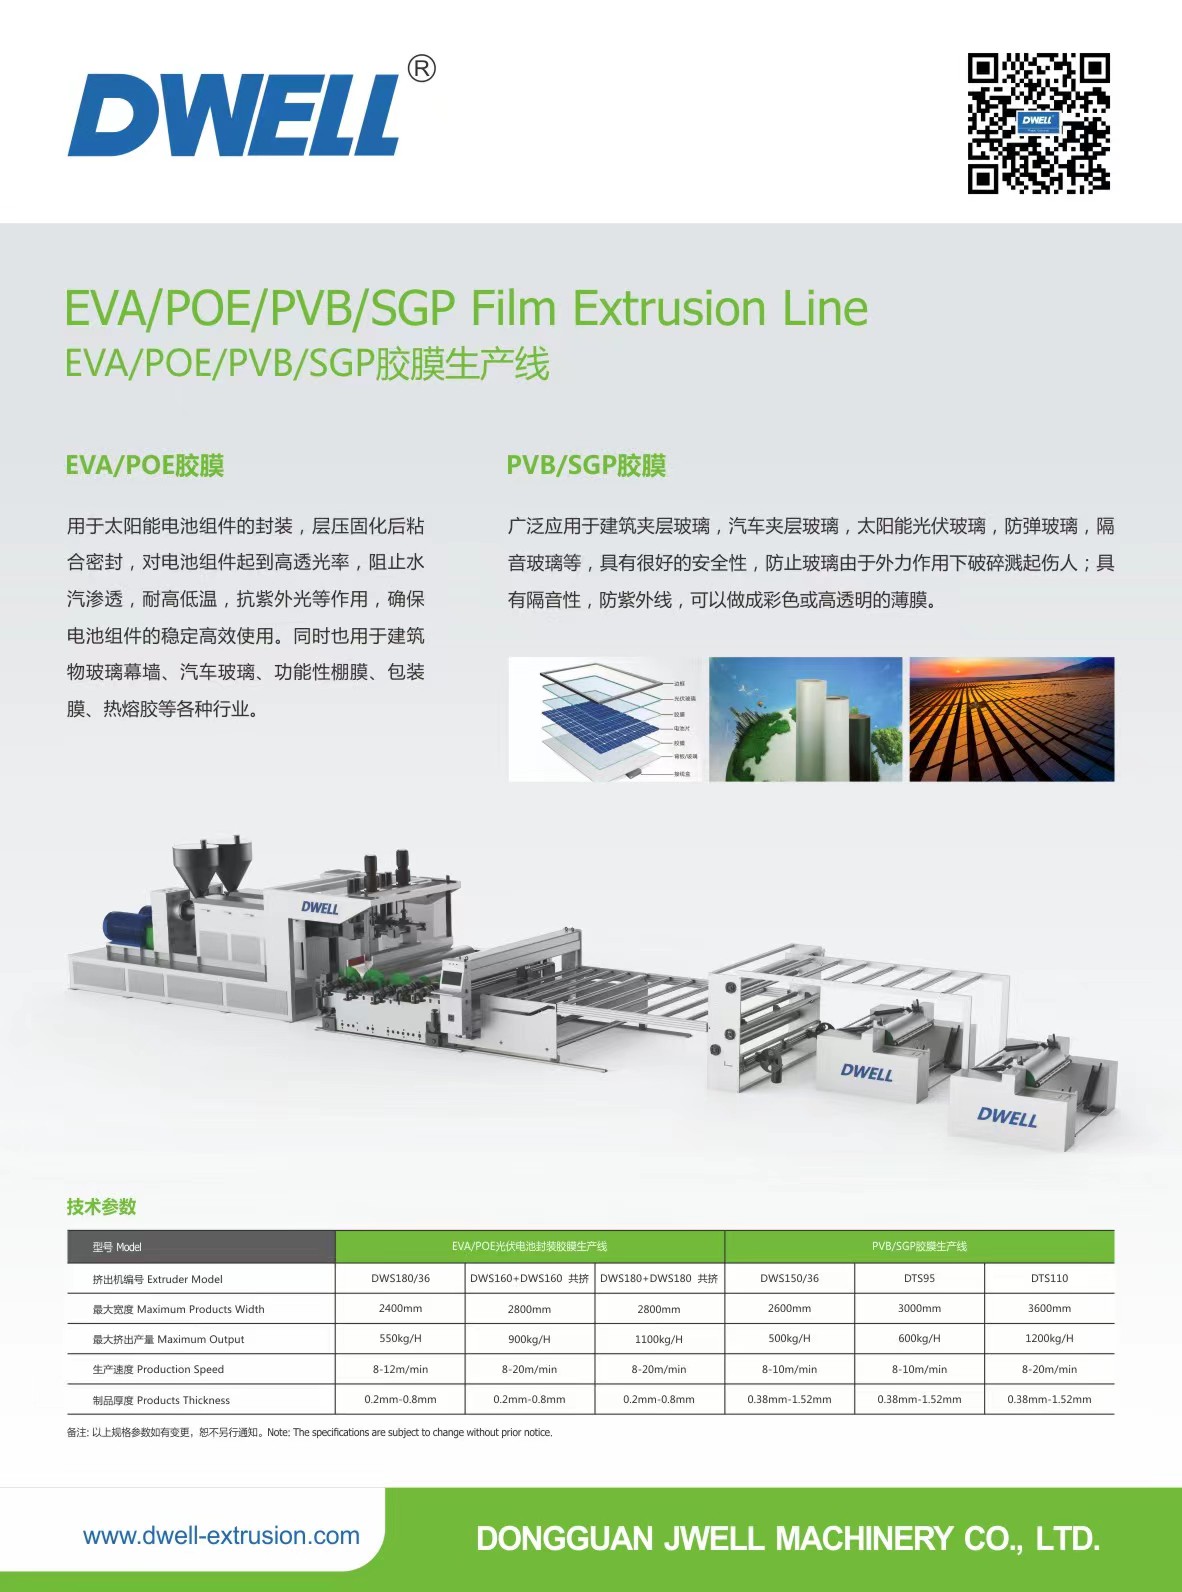 Solar Photovoltaic Film Extrusion Line